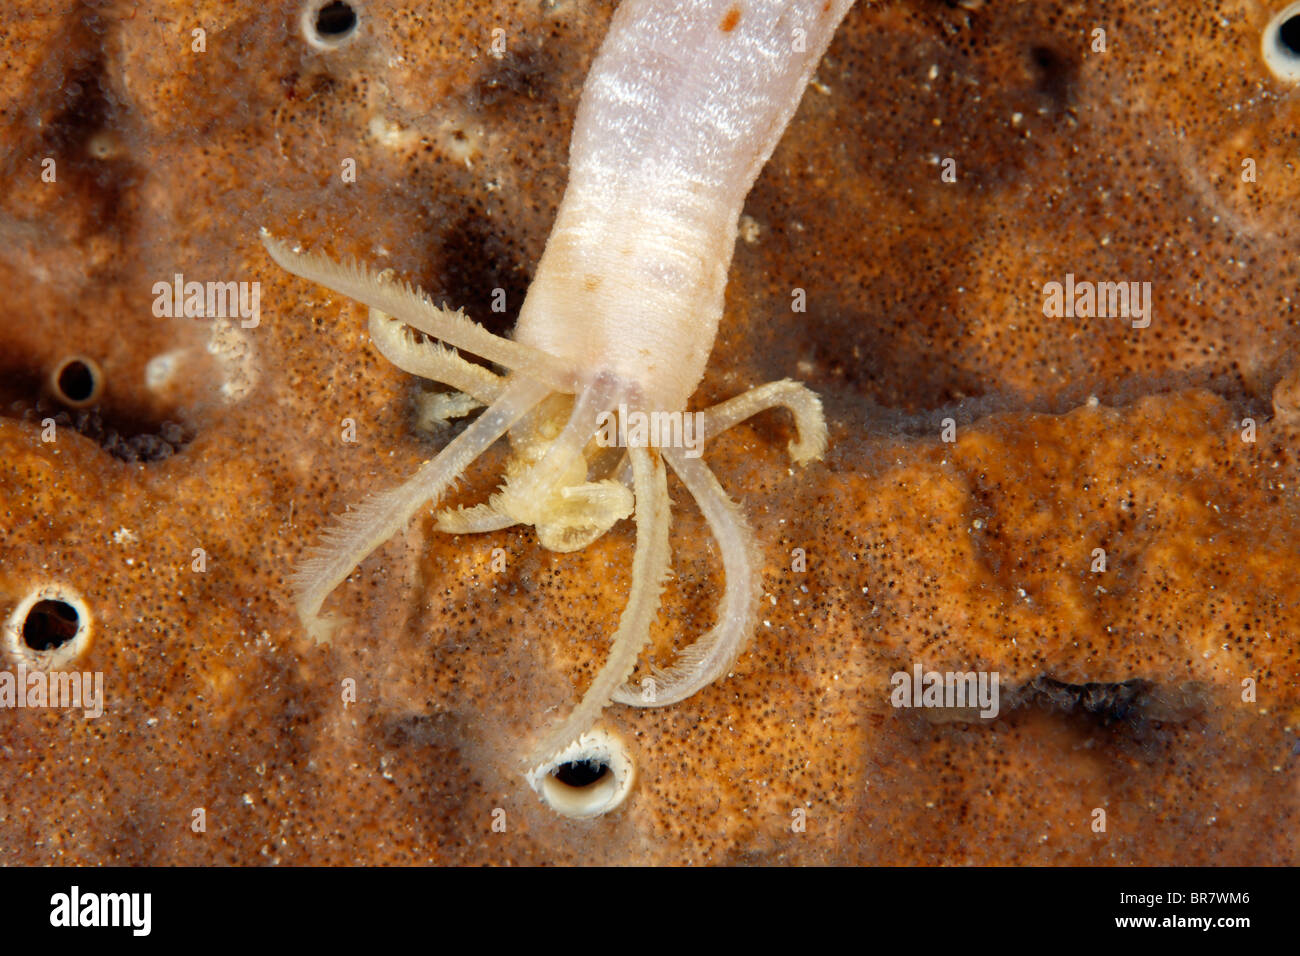 Pepino de mar, bien Euapta Synapta sp o sp. Mostrando los tentáculos de alimentación Foto de stock